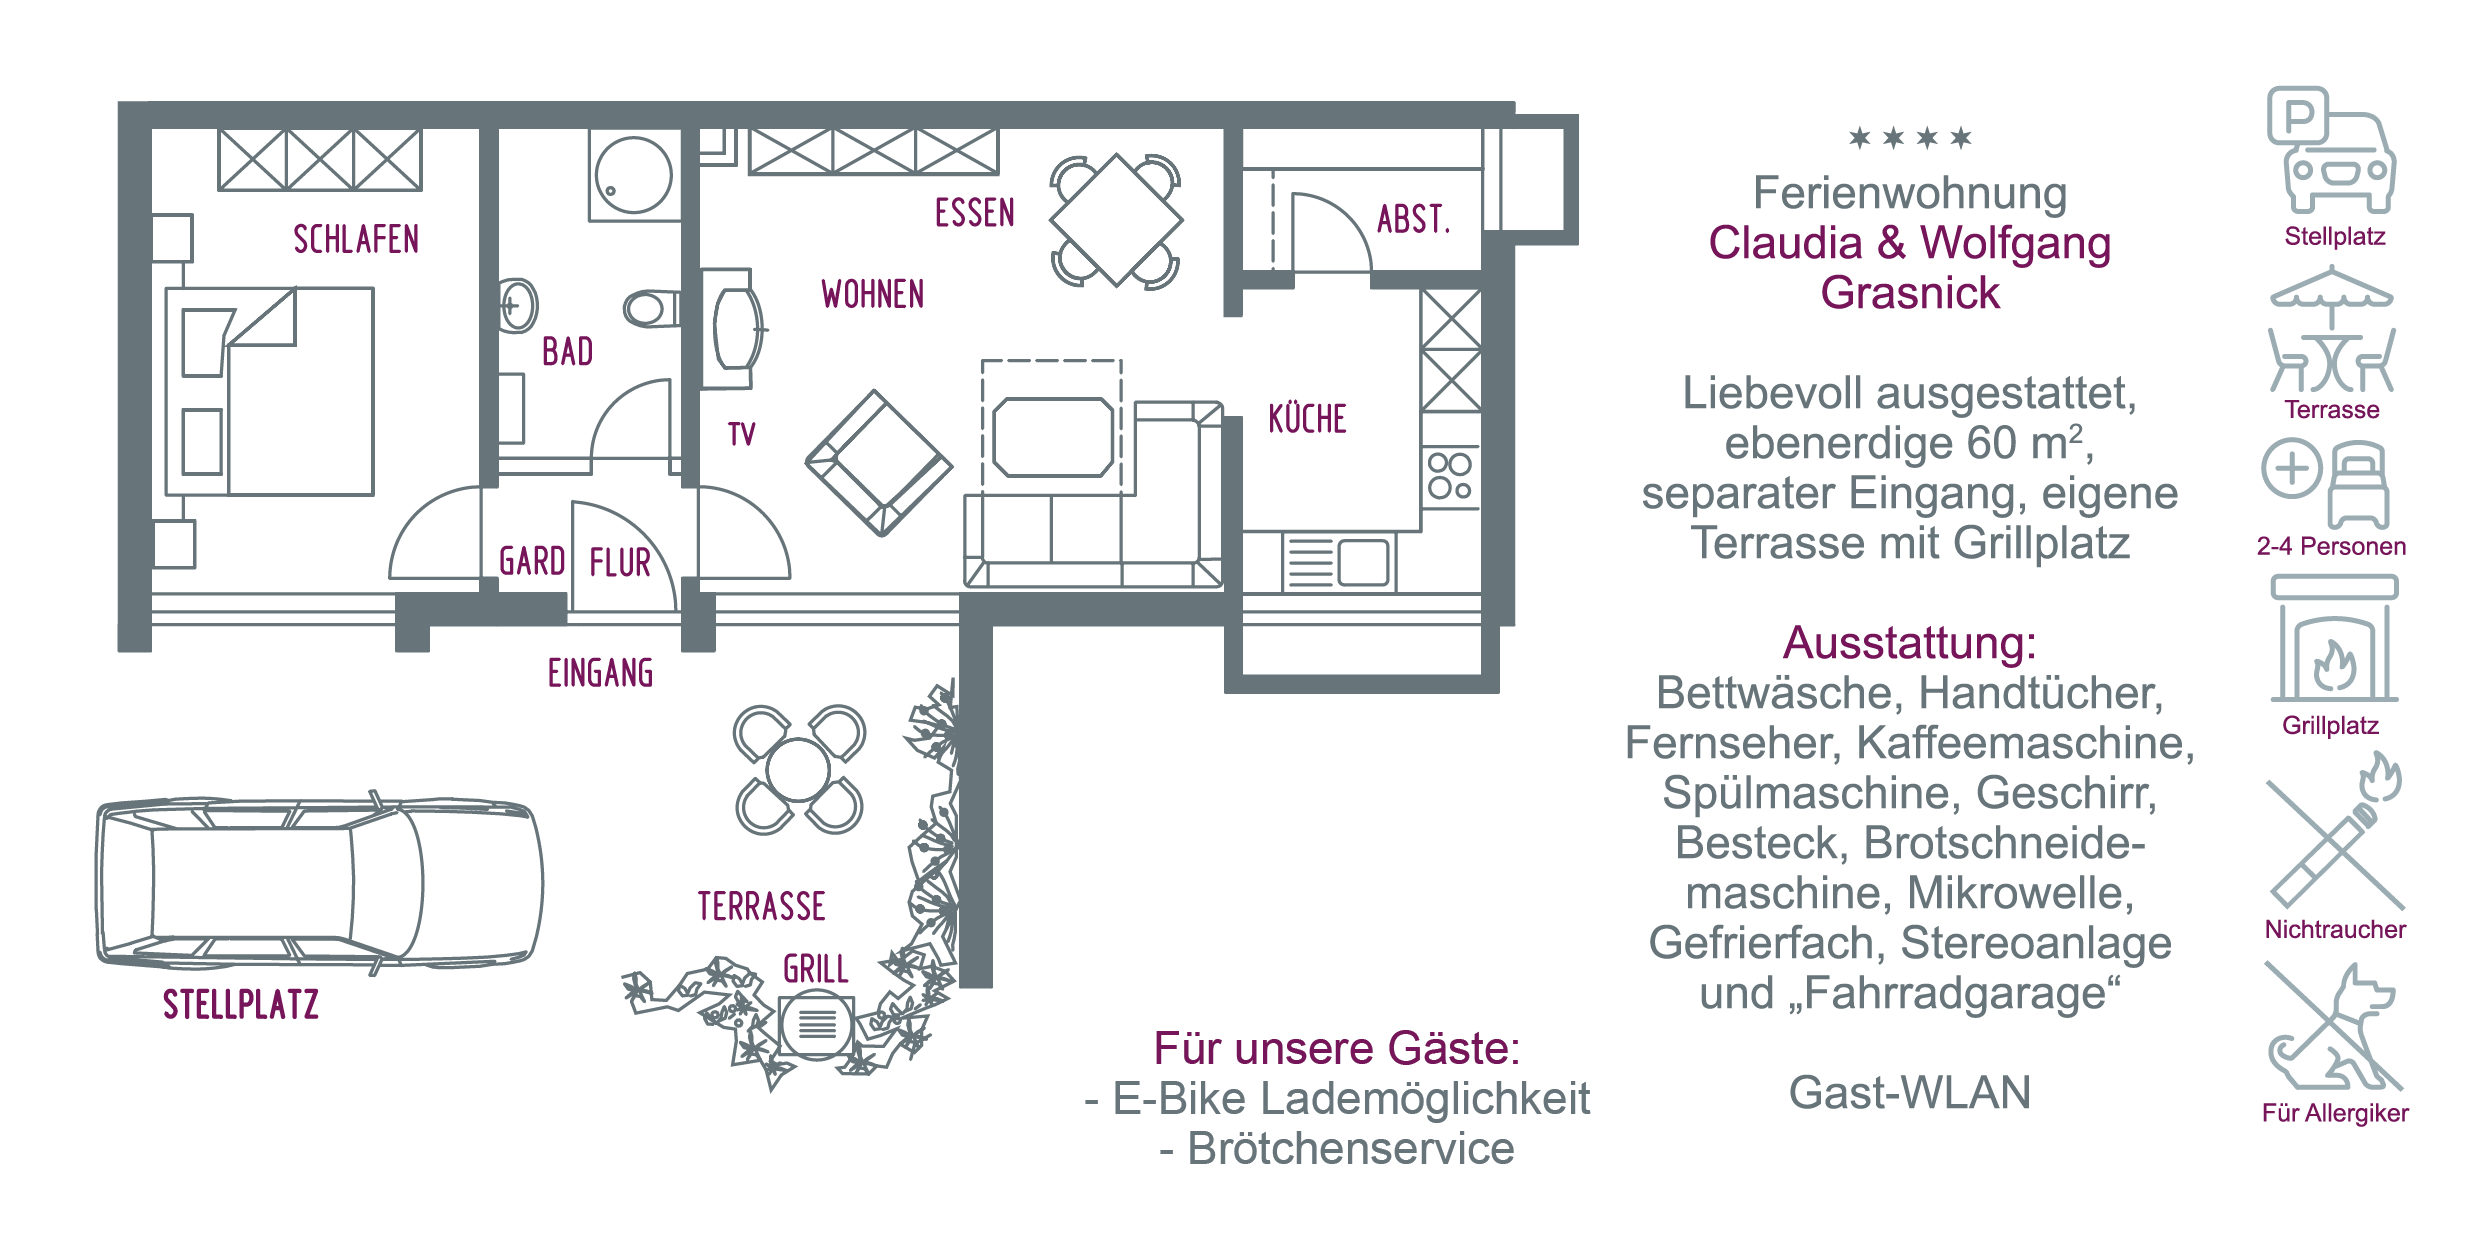 Ferienwohnung Claudia Grasnick Burgen an der Mosel Liebevoll ausgestattet, ebenerdig, separater Eingang, Terrasse, Grillplatz 2-4 Personen, Pkw Stellplatz